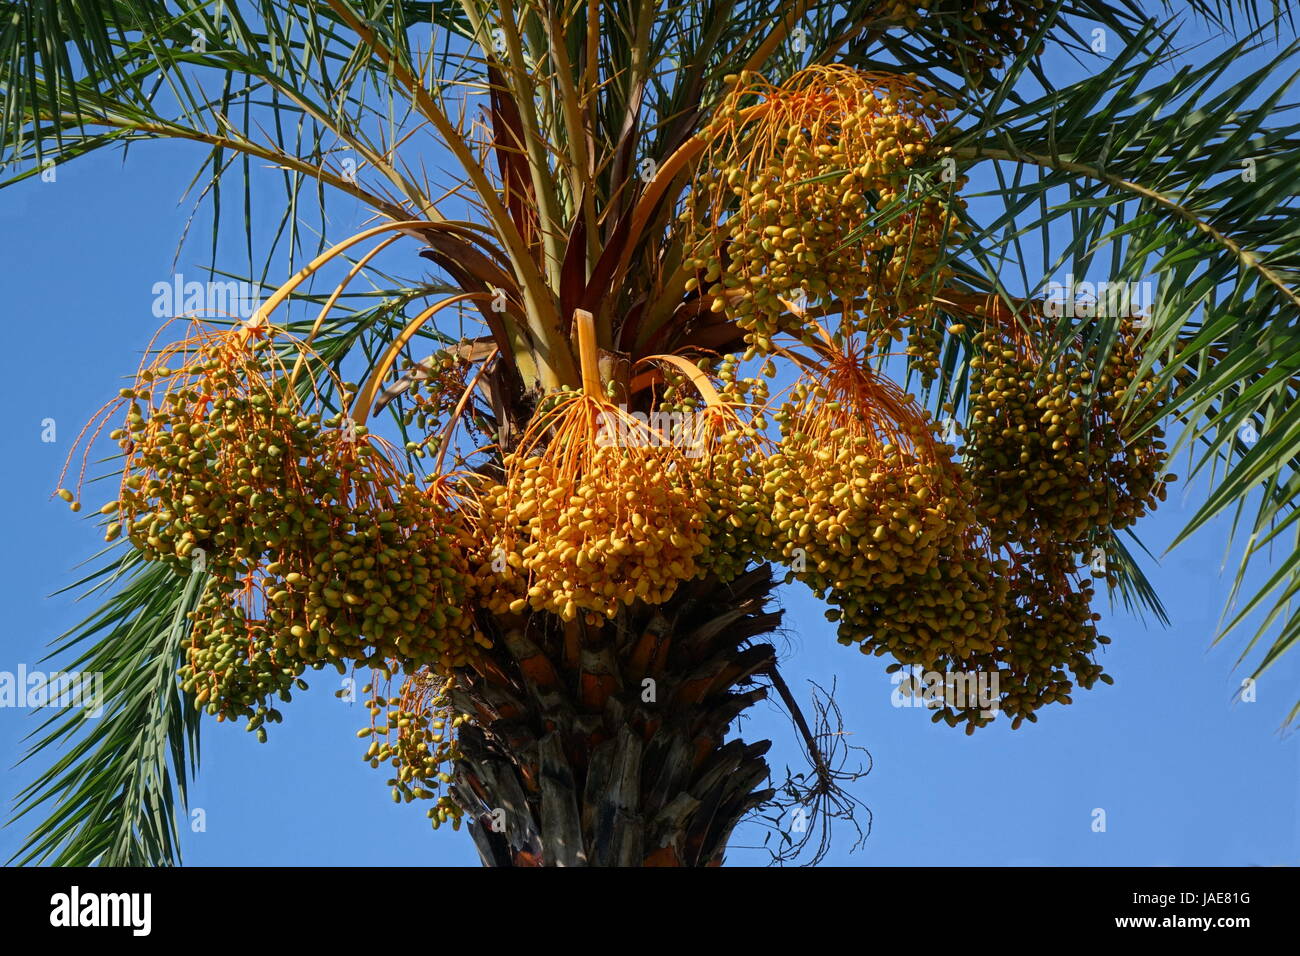 Areca ou noix de bétel (Areca catechu palmier) avec des fruits mûrs Banque D'Images